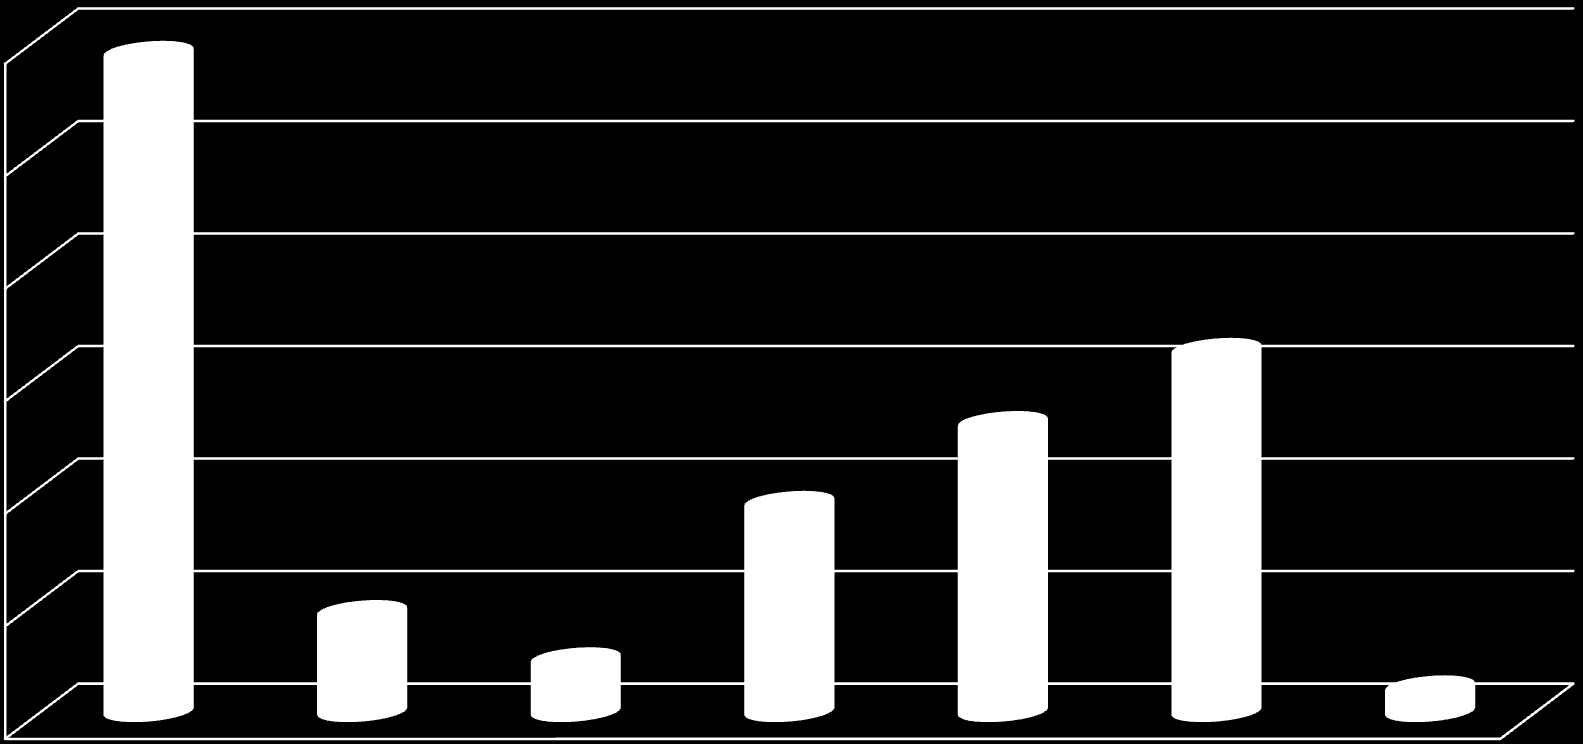 Bérlakás-rendszer 600 586 Bérbe adott lakások száma típusonként (2011. január 1.